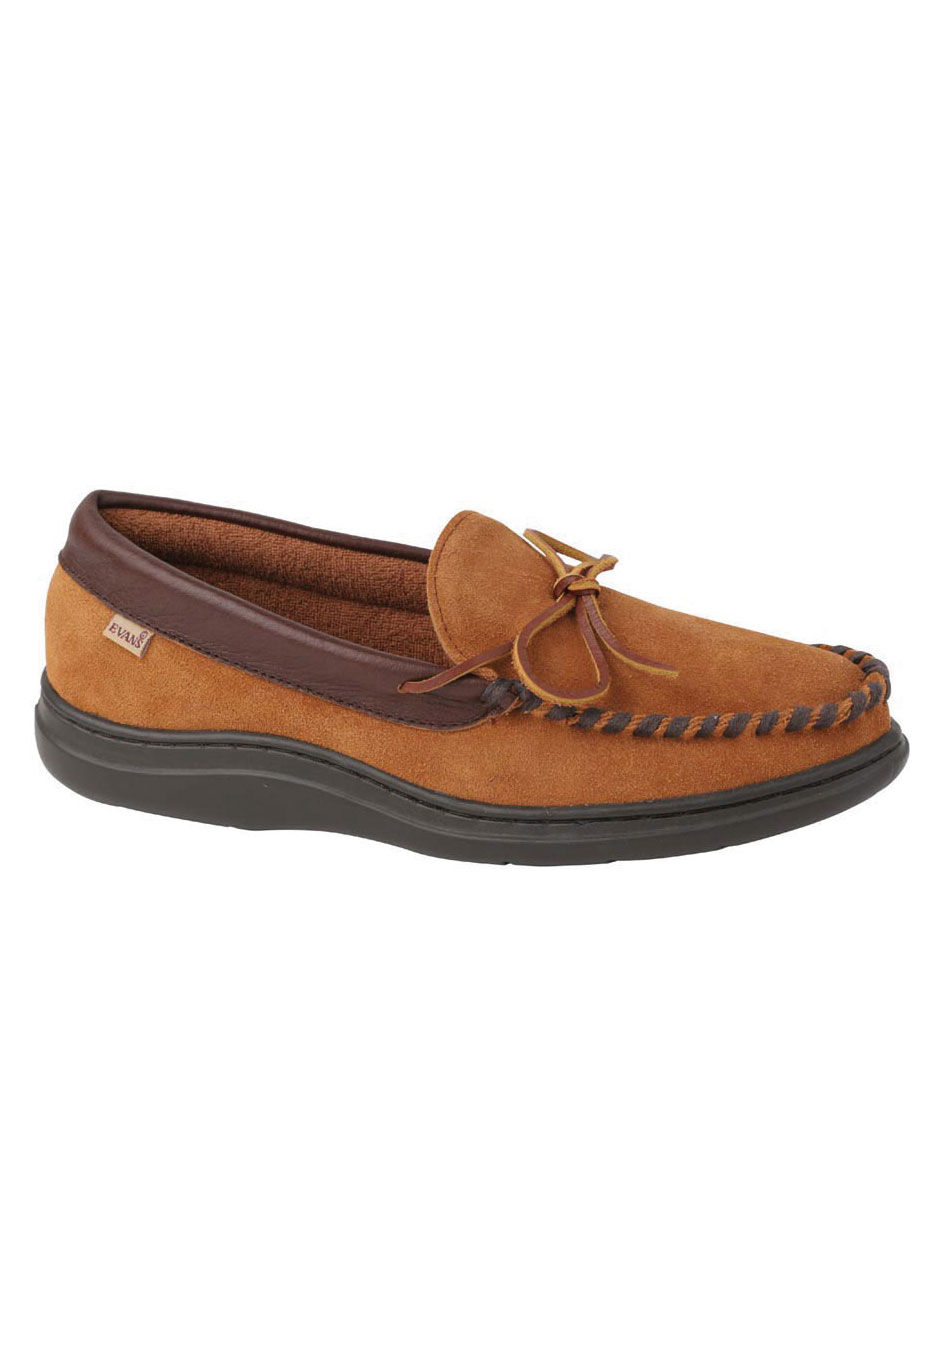 evans sandals size 10